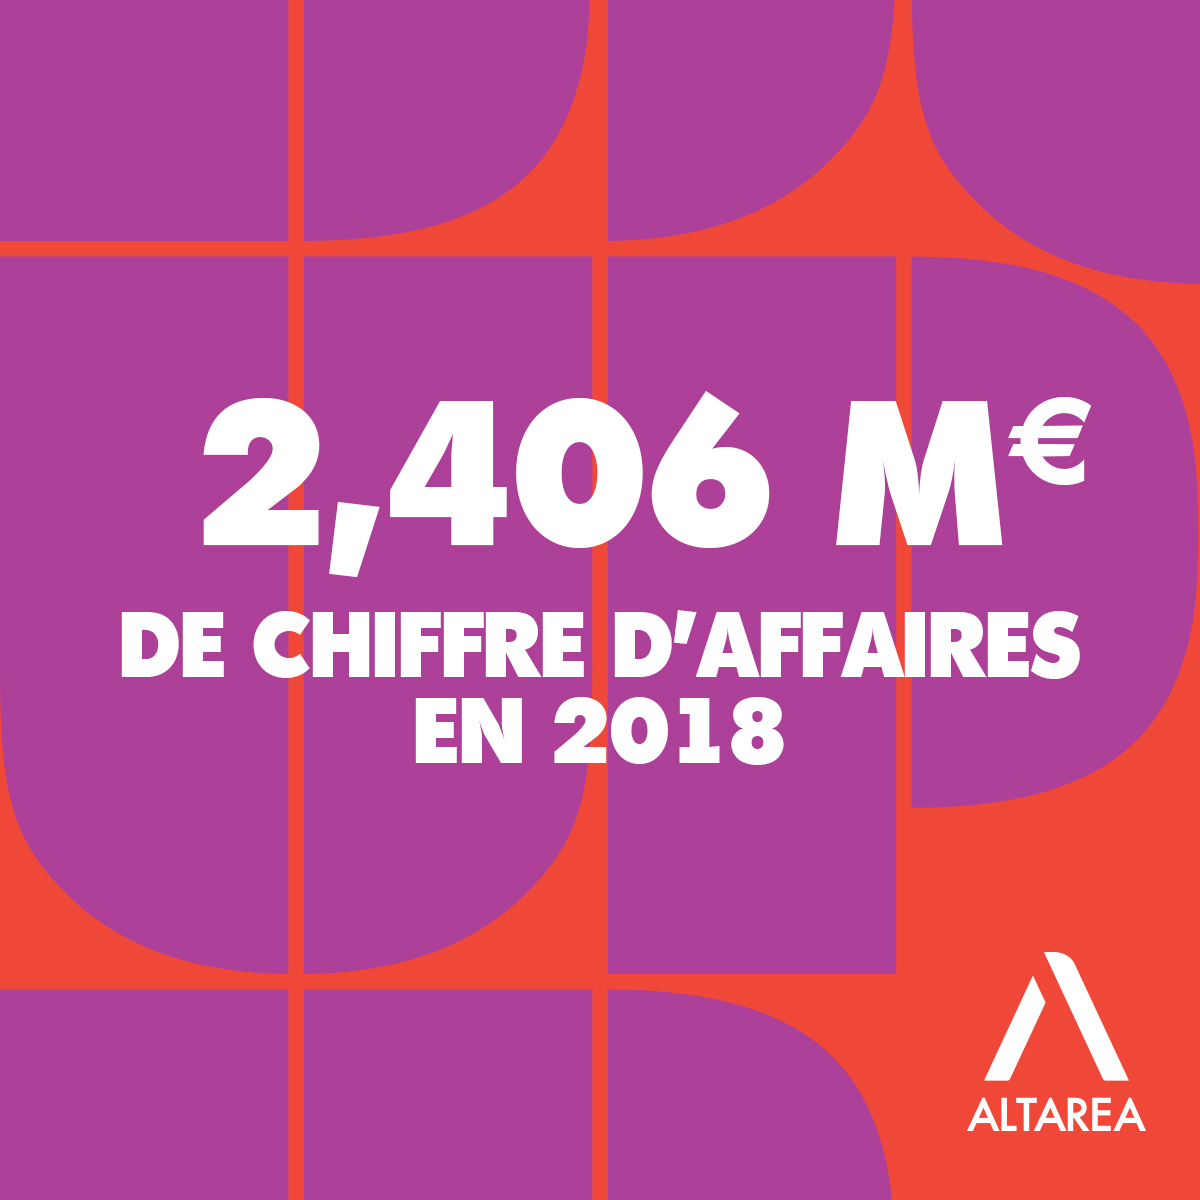 Altarea, gabarit chiffre clé - 2,406 M d'euros de chiffres d'affaires en 2018